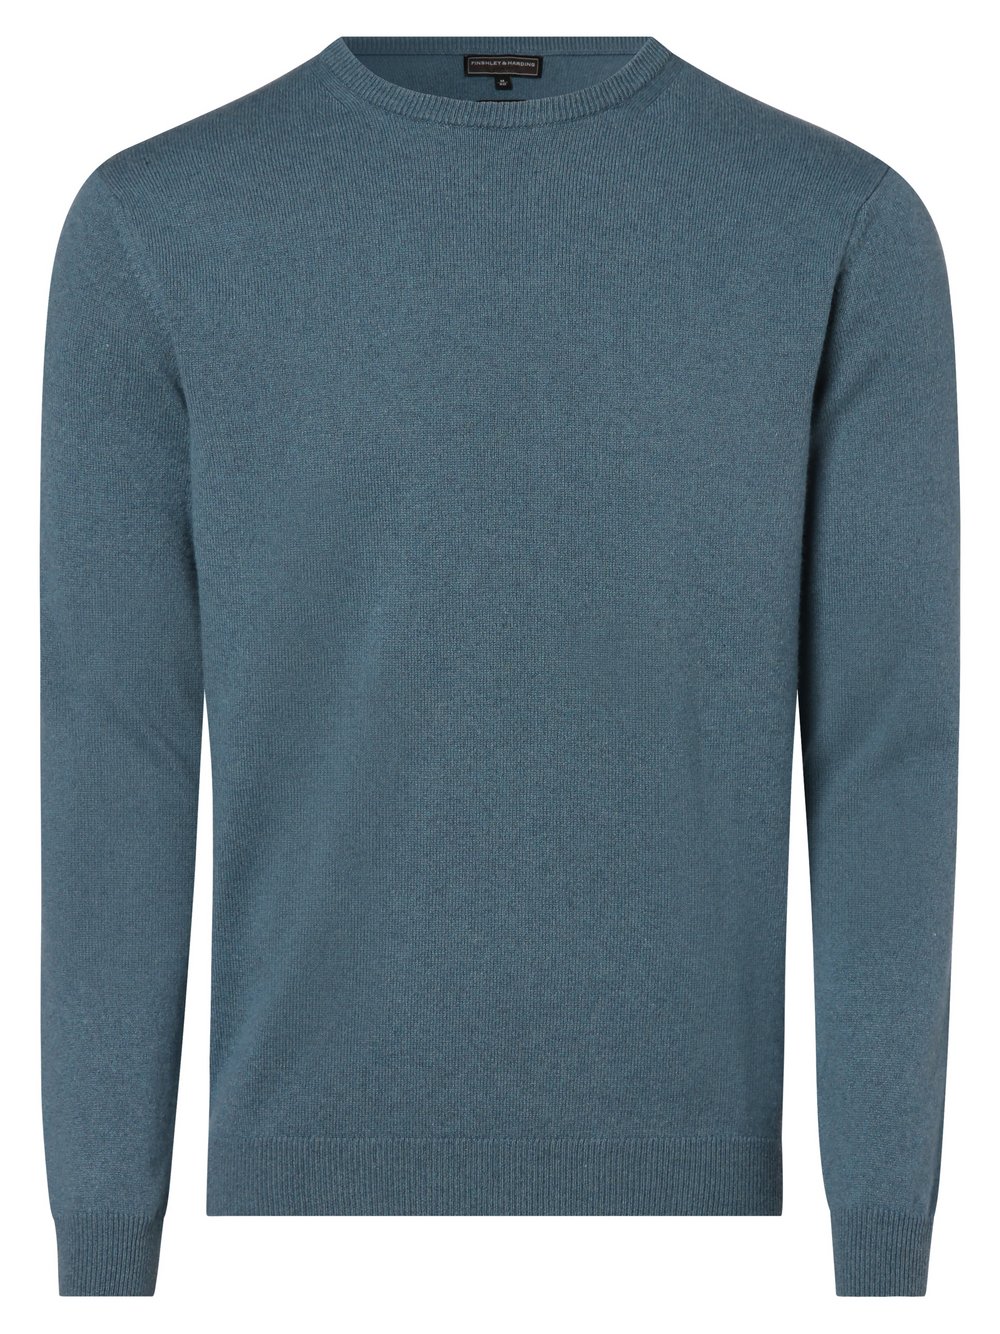 Finshley & Harding - Męski sweter z mieszanki kaszmiru i jedwabiu, niebieski|zielony